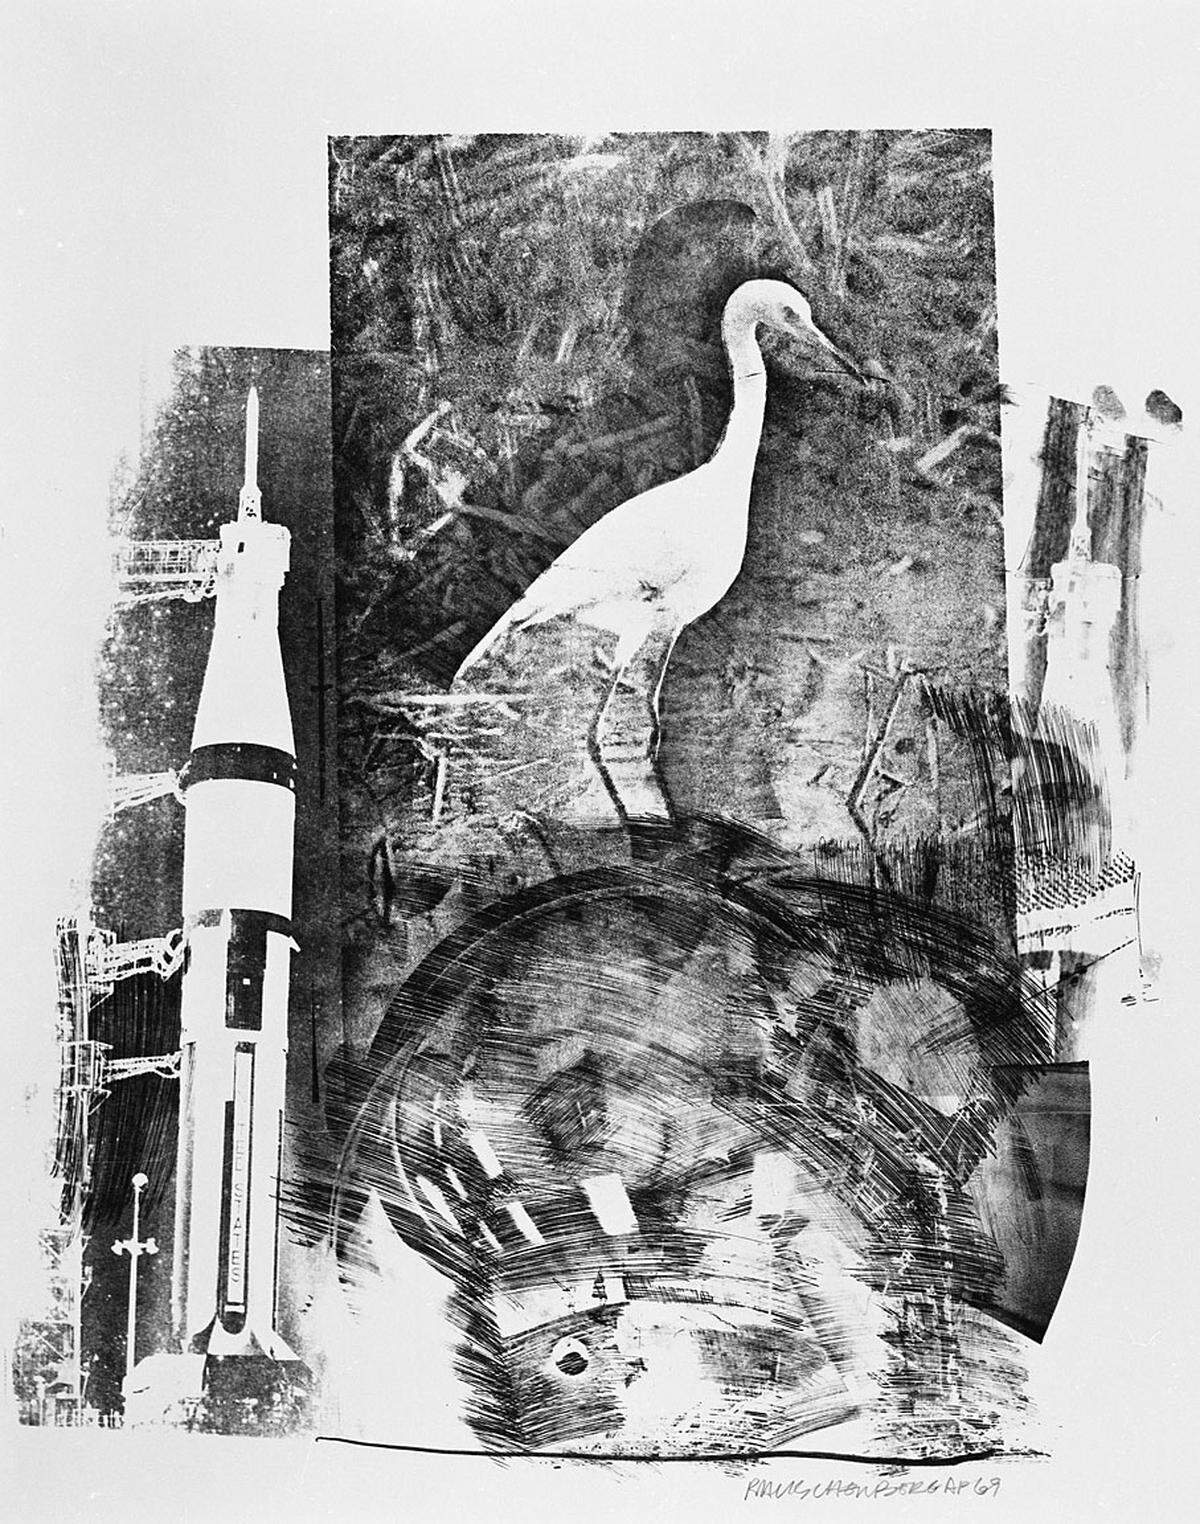 Robert Rauschenberg gehörte 1969 zu den privilegierten Künstlern, die einen Raketenstart live erleben konnten und diese Erfahrung in ihre Arbeit einfließen ließen. Von der NASA bekam er detaillierte Karten, Tabellen und Fotografien der Apollo 11-Mission zu Verfügung gestellt, welche die Basis für seine Lithografie-Serie "Stoned Moon" bilden.  Im Bild: Robert Rauschenberg, Stoned Moon Series, Horn, 1969, Courtesy of Gemini G.E.L., Los Angeles